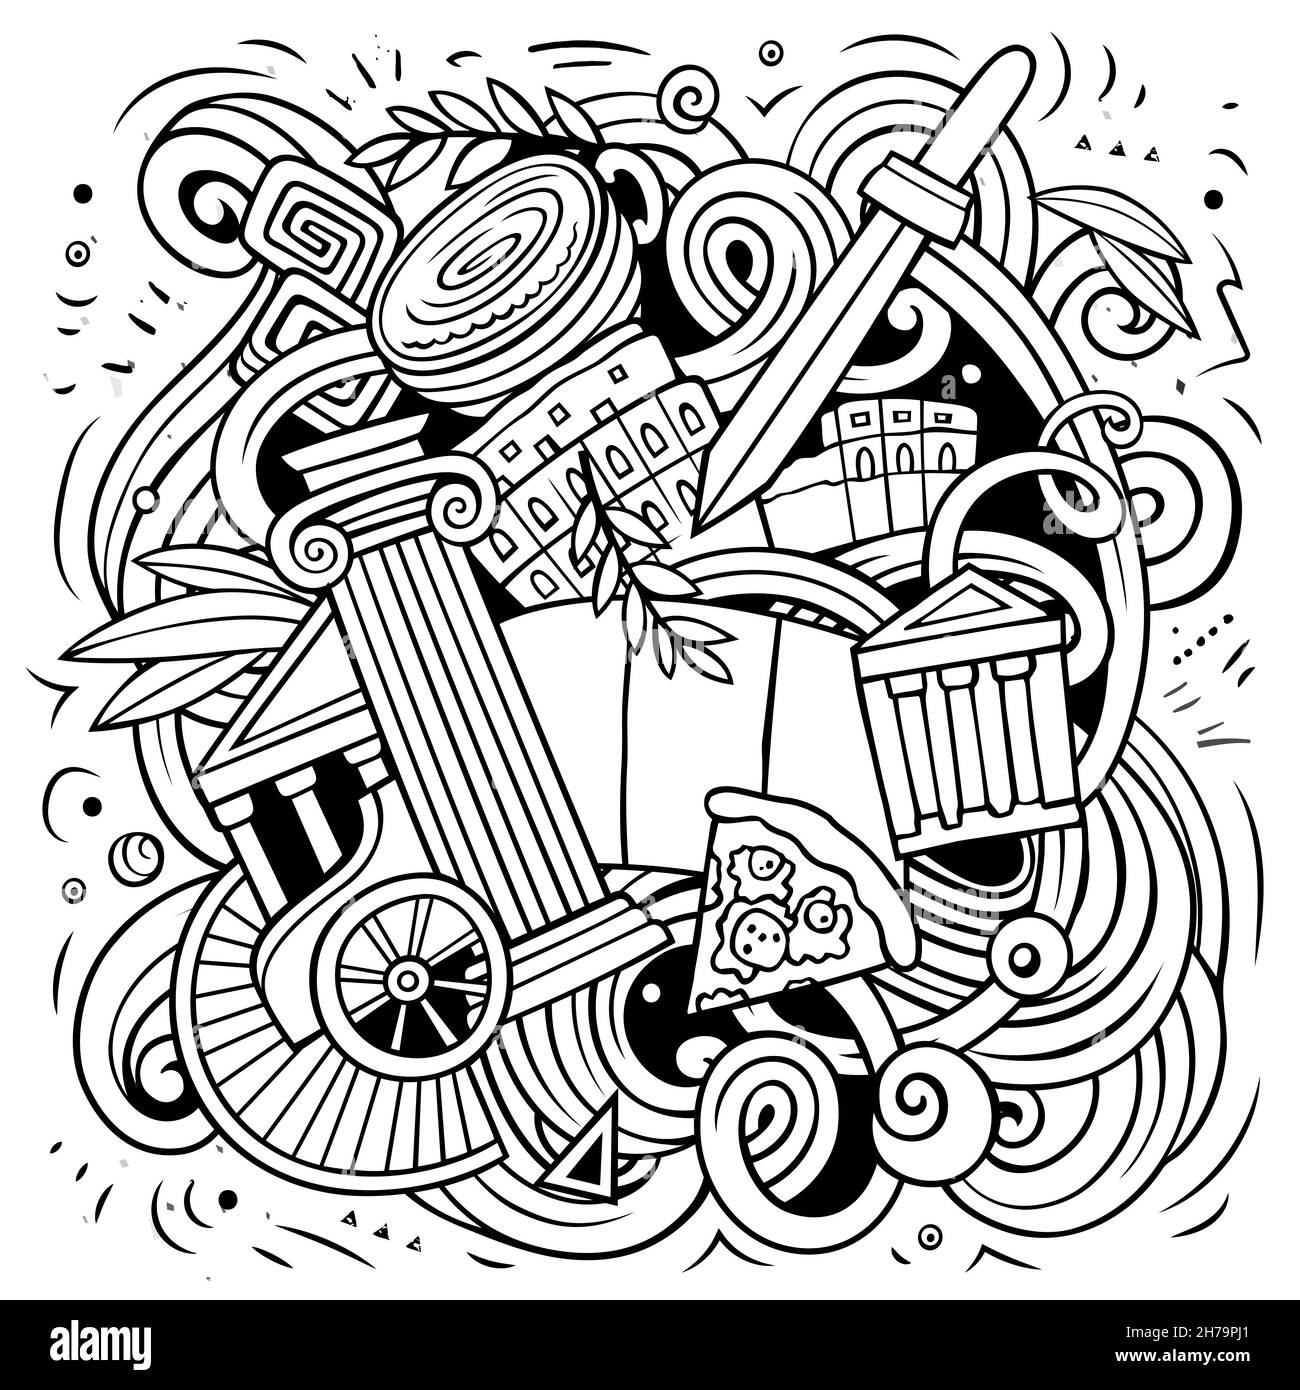 Cartoon vettore fumetto illustrazione. Composizione dettagliata di schizzo con molti oggetti e simboli italiani Illustrazione Vettoriale